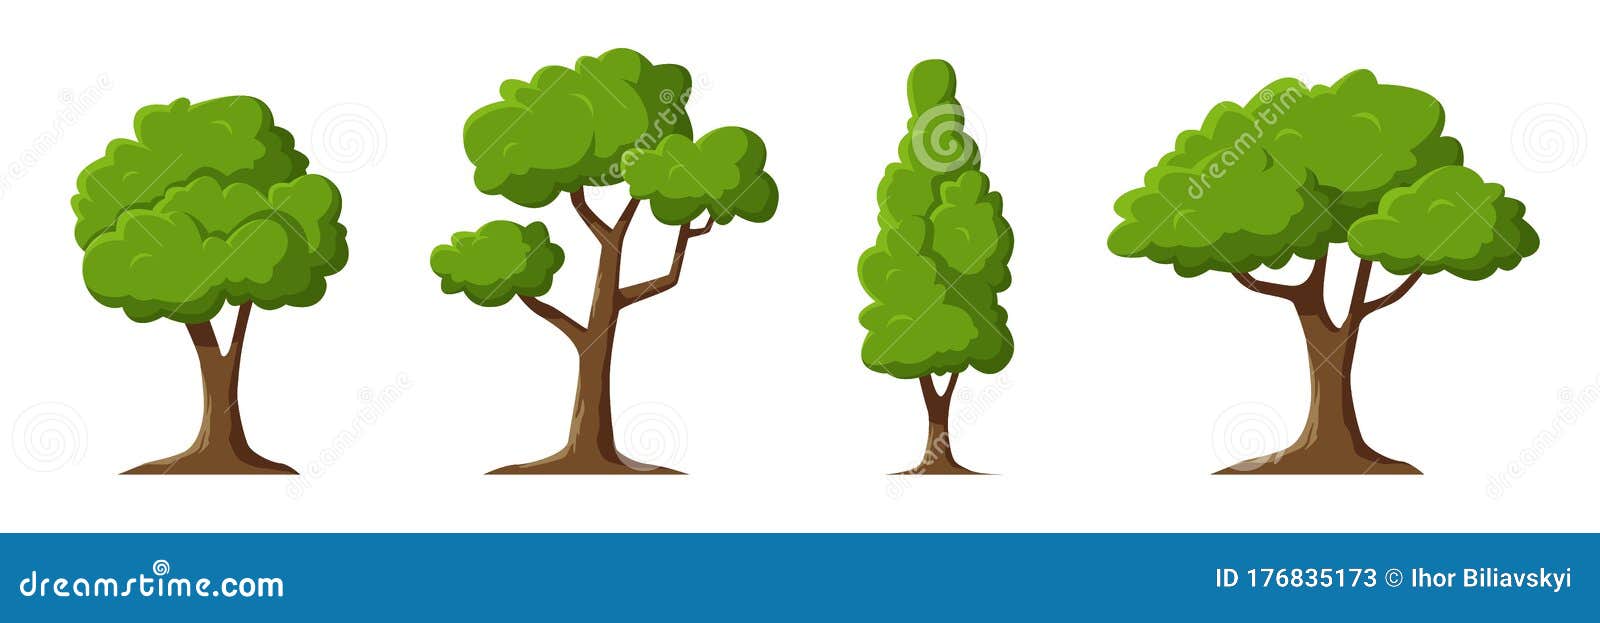 árboles De Dibujos Animados Aislados En Un Fondo Blanco. Estilo Moderno.  Bosque De Plantas Verdes. Se Puede Utilizar Para Ilustrar Ilustración del  Vector - Ilustración de ambiente, planta: 176835173